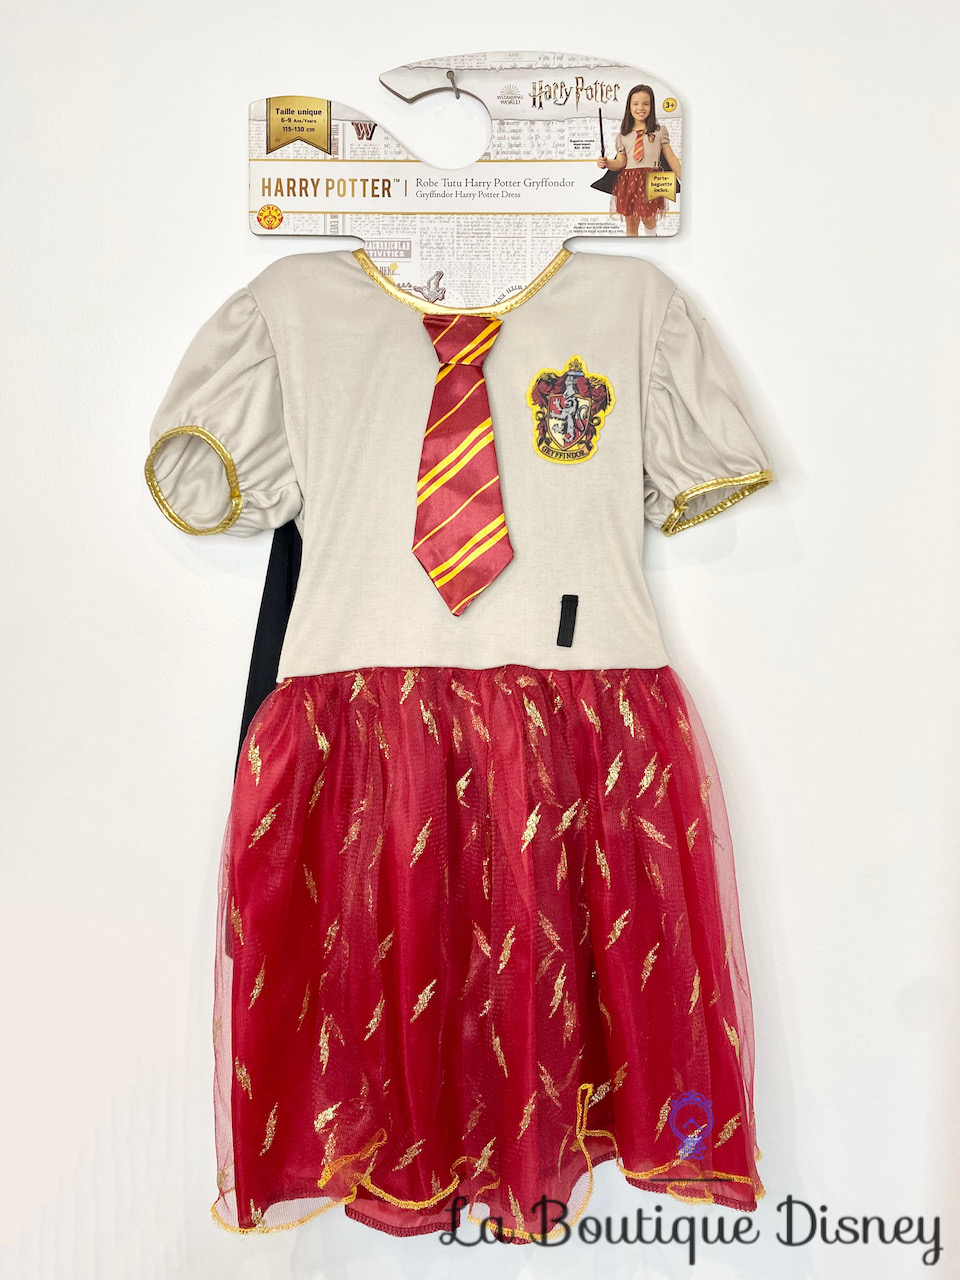 Déguisement Harry Potter Gryffondor Robe Tutu Rubies taille unique 6-9 ans  Wizarding World - Déguisements/Taille 4 à 6 ans - La Boutique Disney